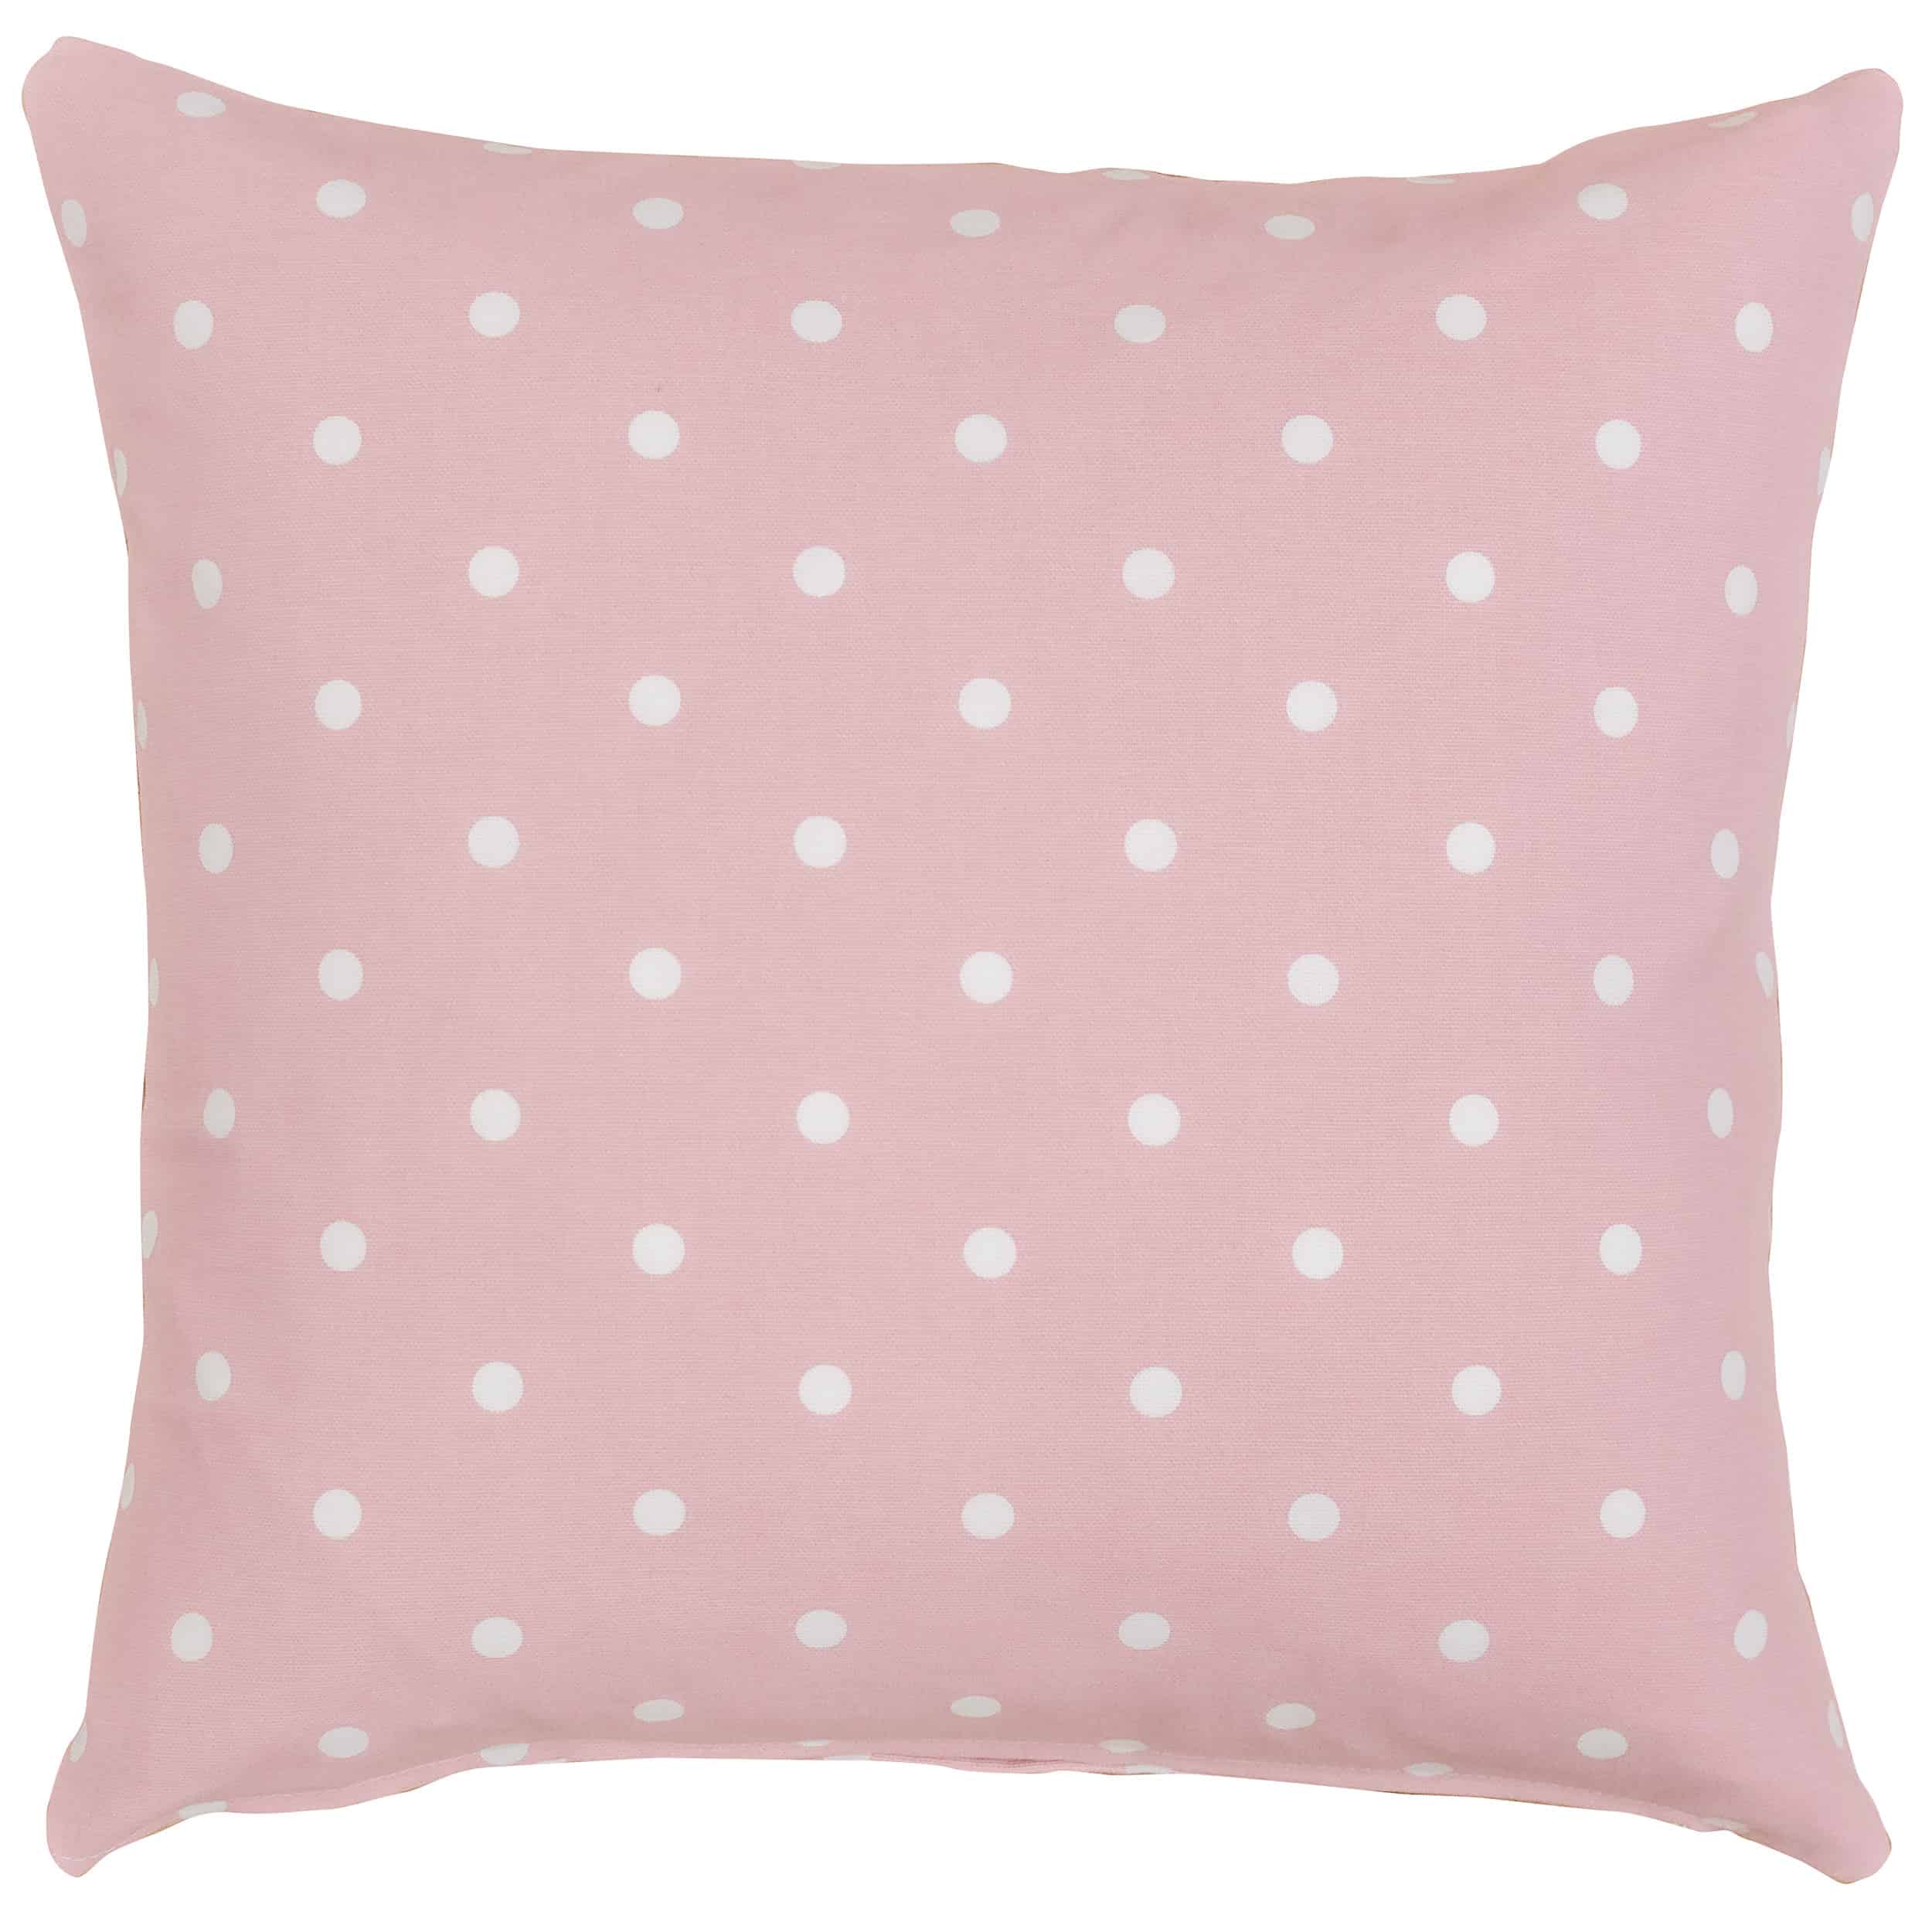 Polkadot Print Cushion in Baby Pink - Linen Loft